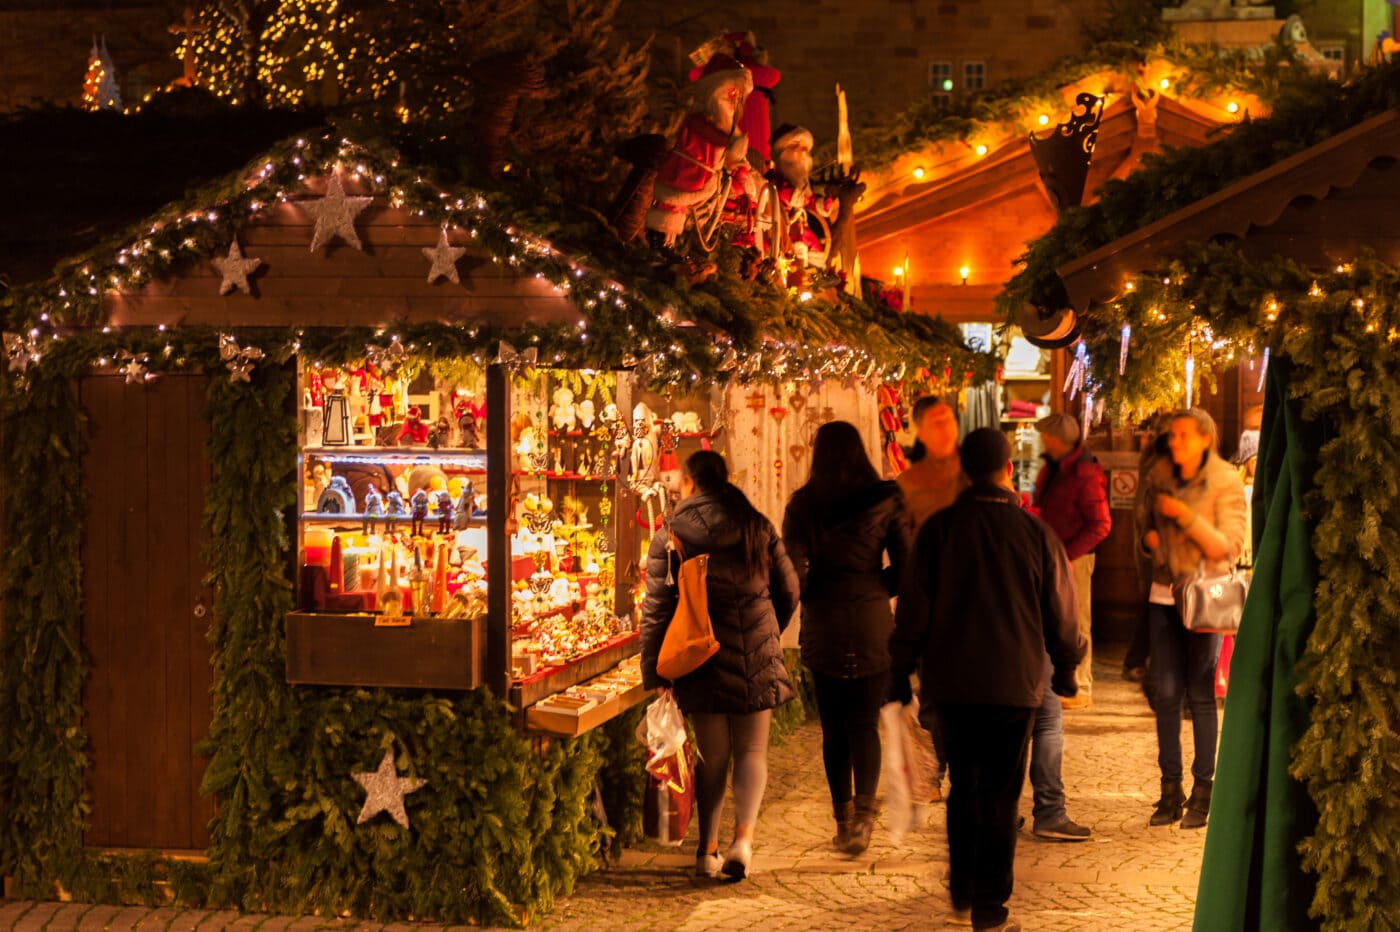 Vögeligärtli Luzern: Dieses Jahr gibt’s keinen Weihnachtsevent mehr